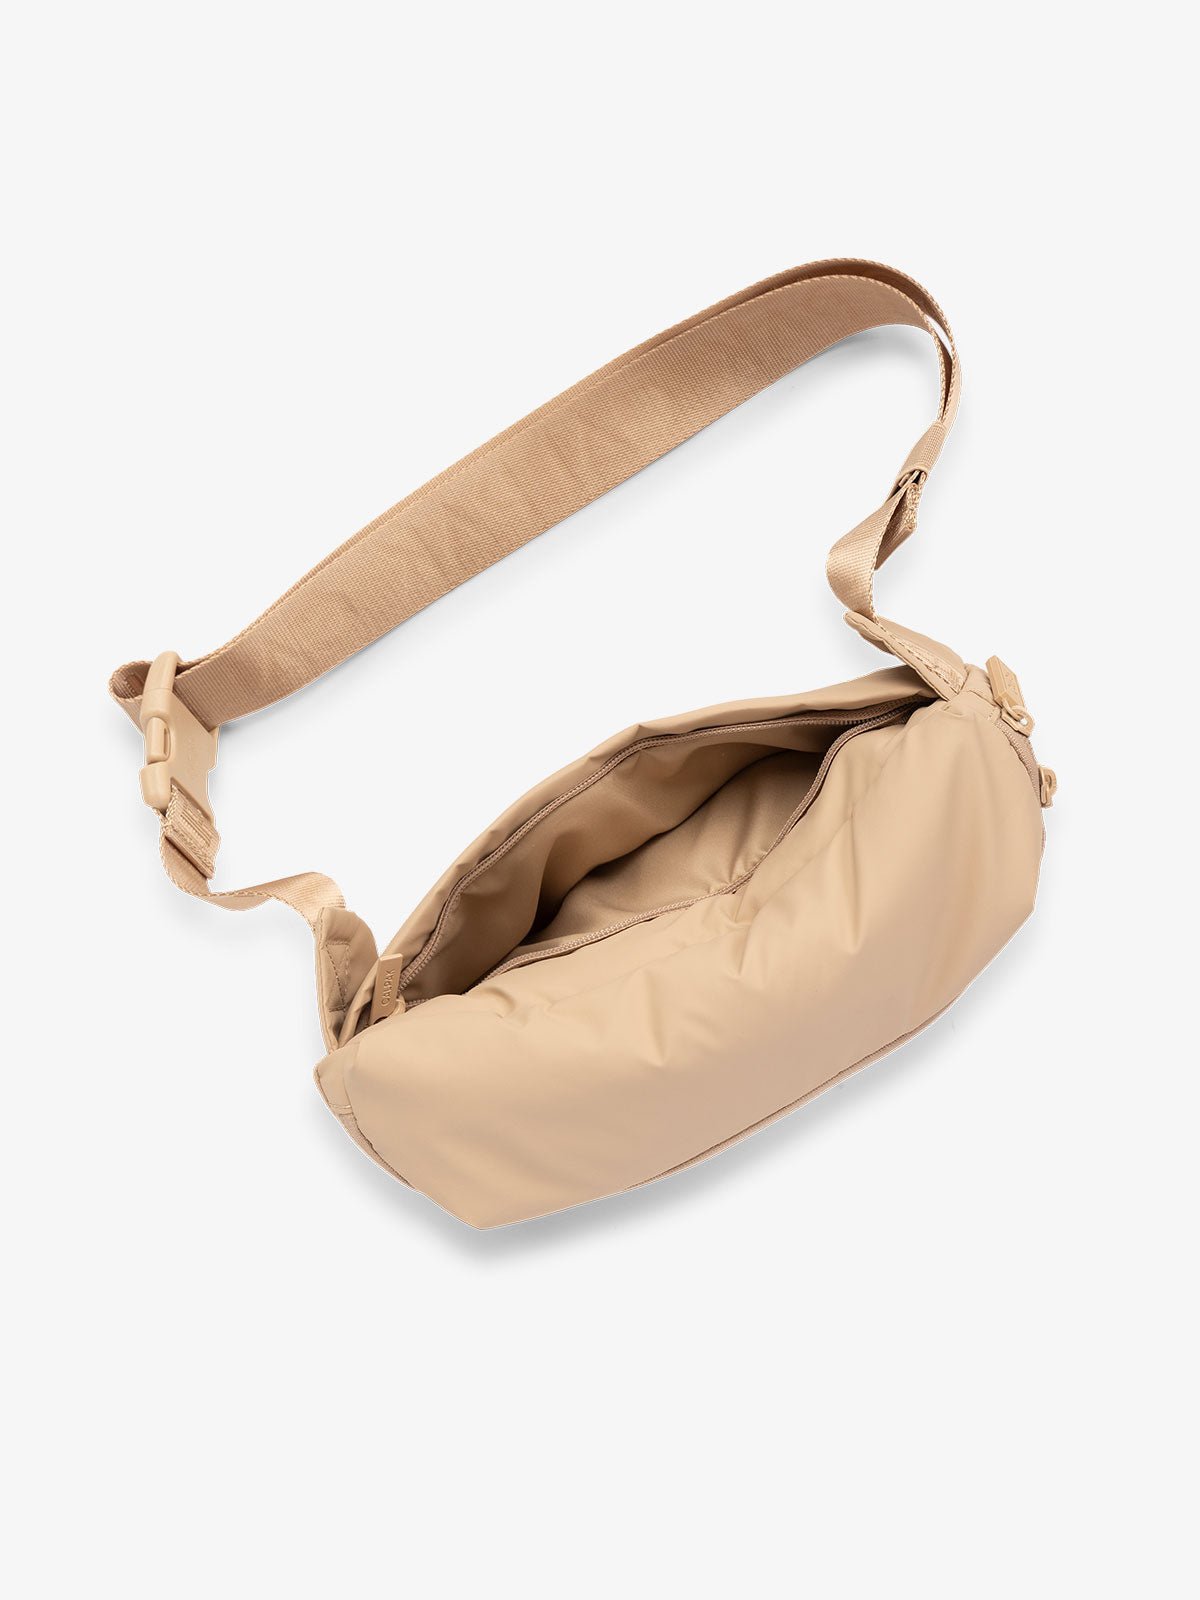 CALPAK Luka Belt Bag with adjustable strap and hidden back pocket in light brown